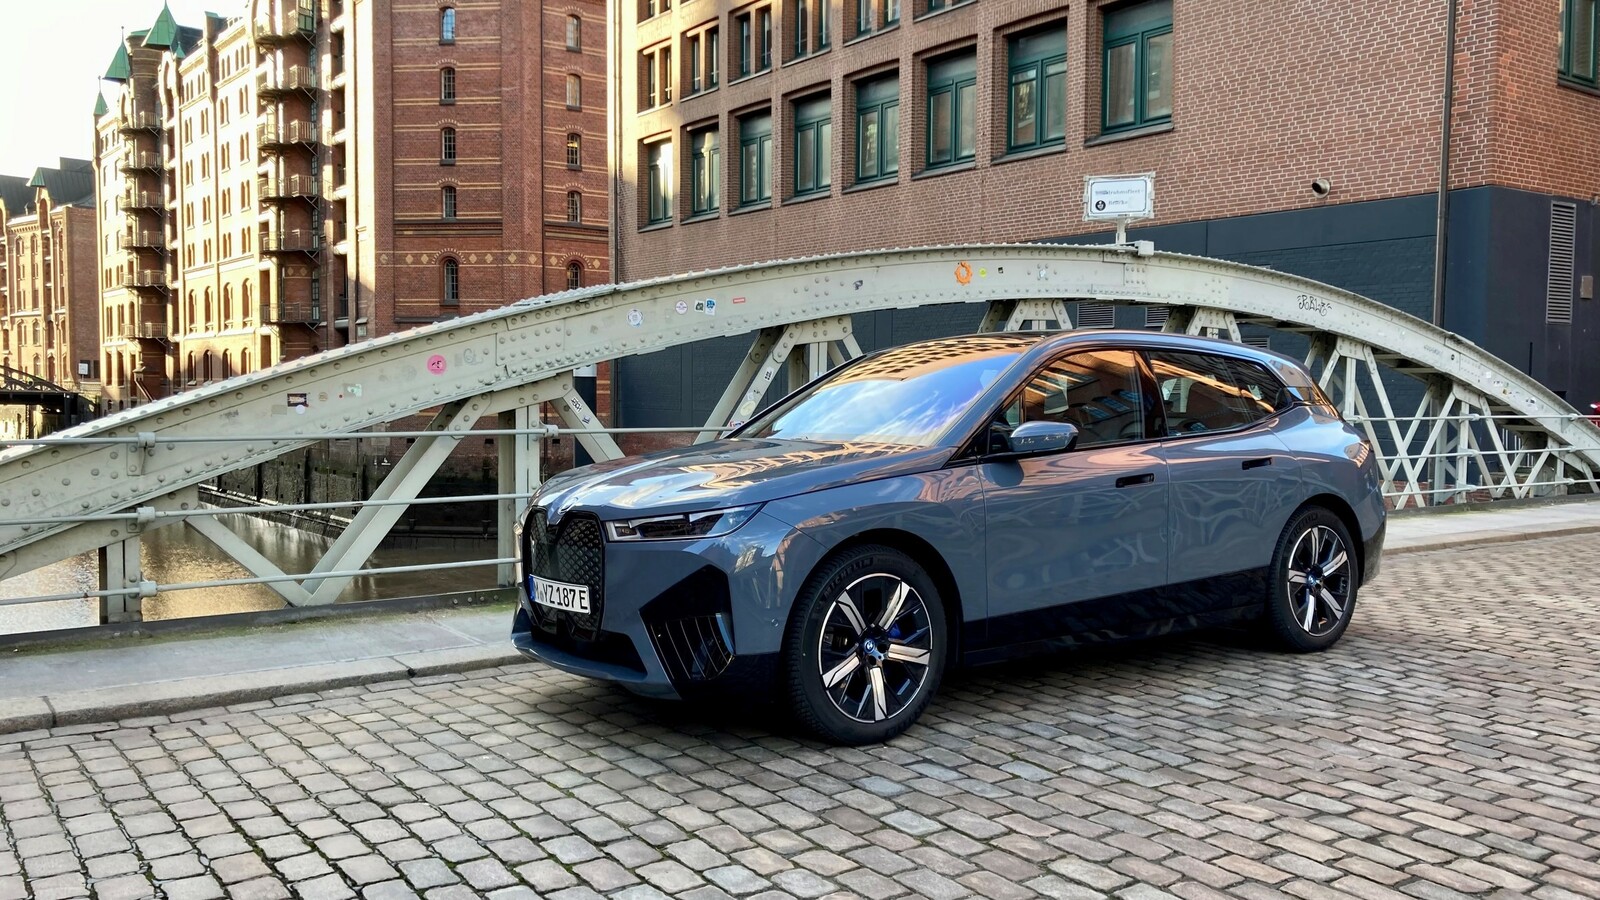 Schaut selbstbewusst in die Welt: BMWs großes Elektro-SUV iX. Ganz so kolossal wie auf Fotos wirkt der Bayer live aber nicht.